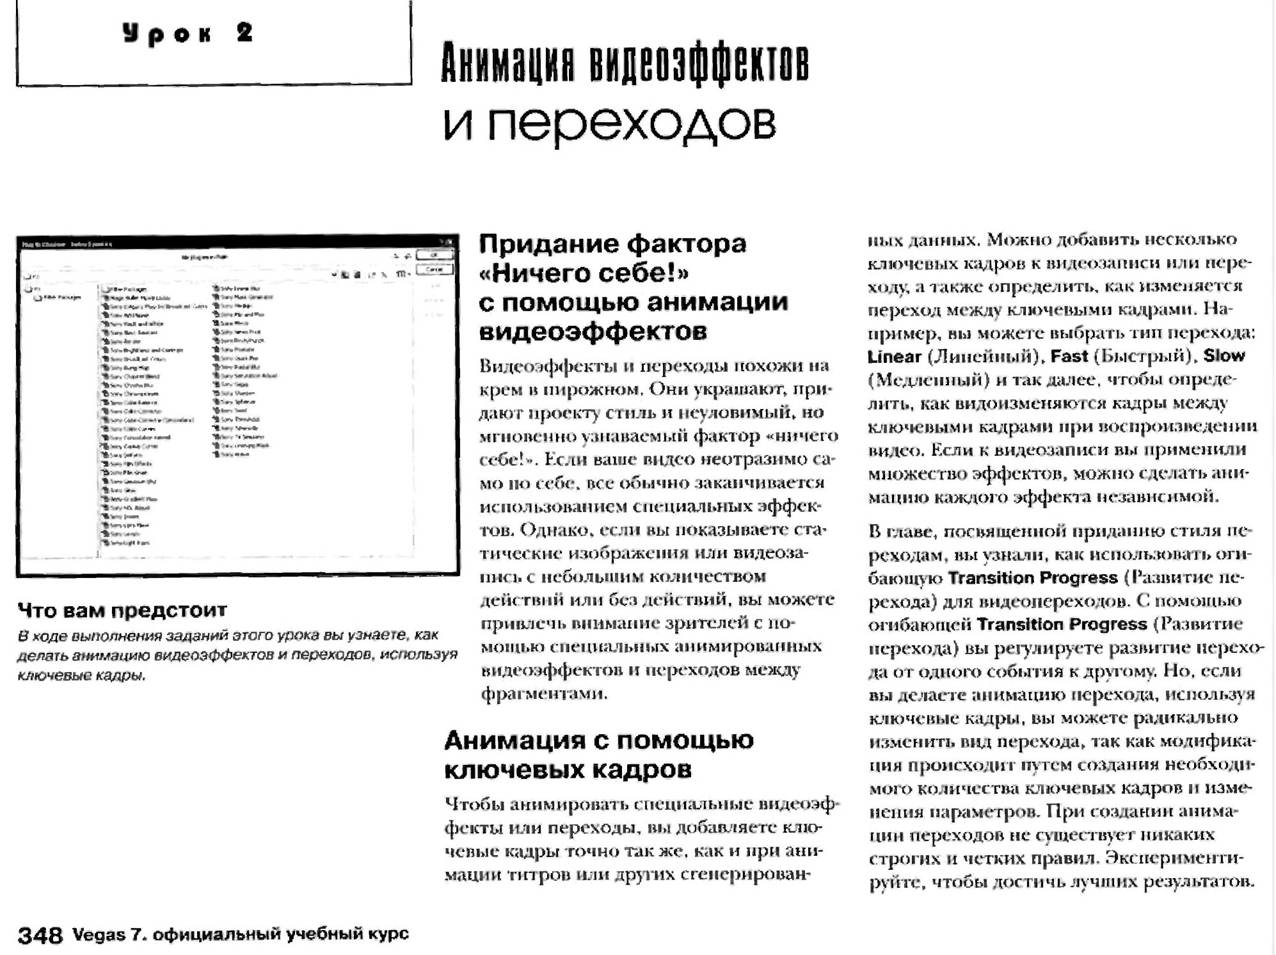 http://redaktori-uroki.3dn.ru/_ph/12/365772069.jpg